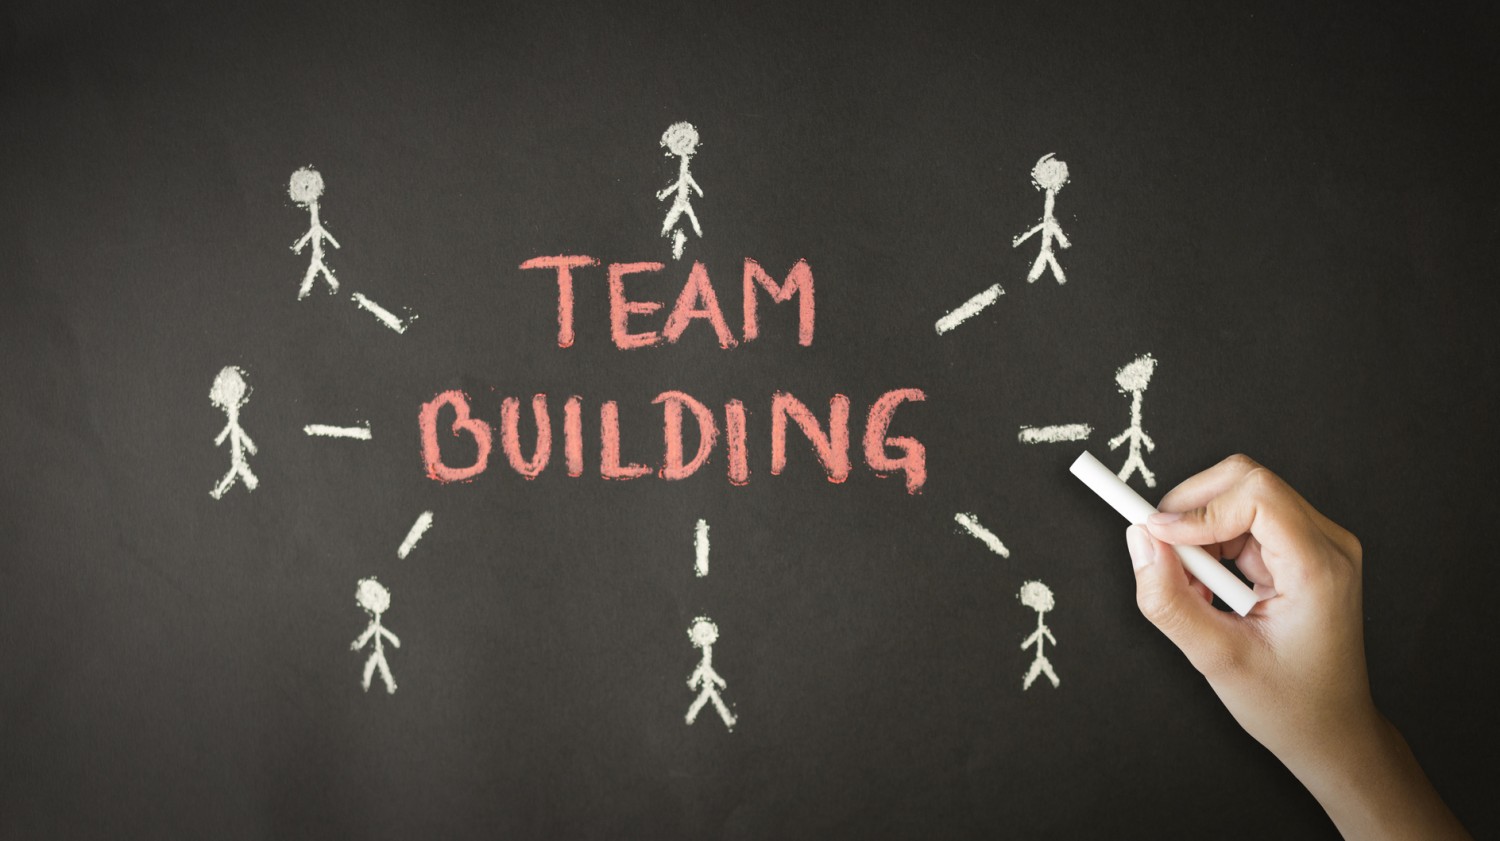 论一个团队的建设与管理：有共同愿景的人就可以组成团队吗？